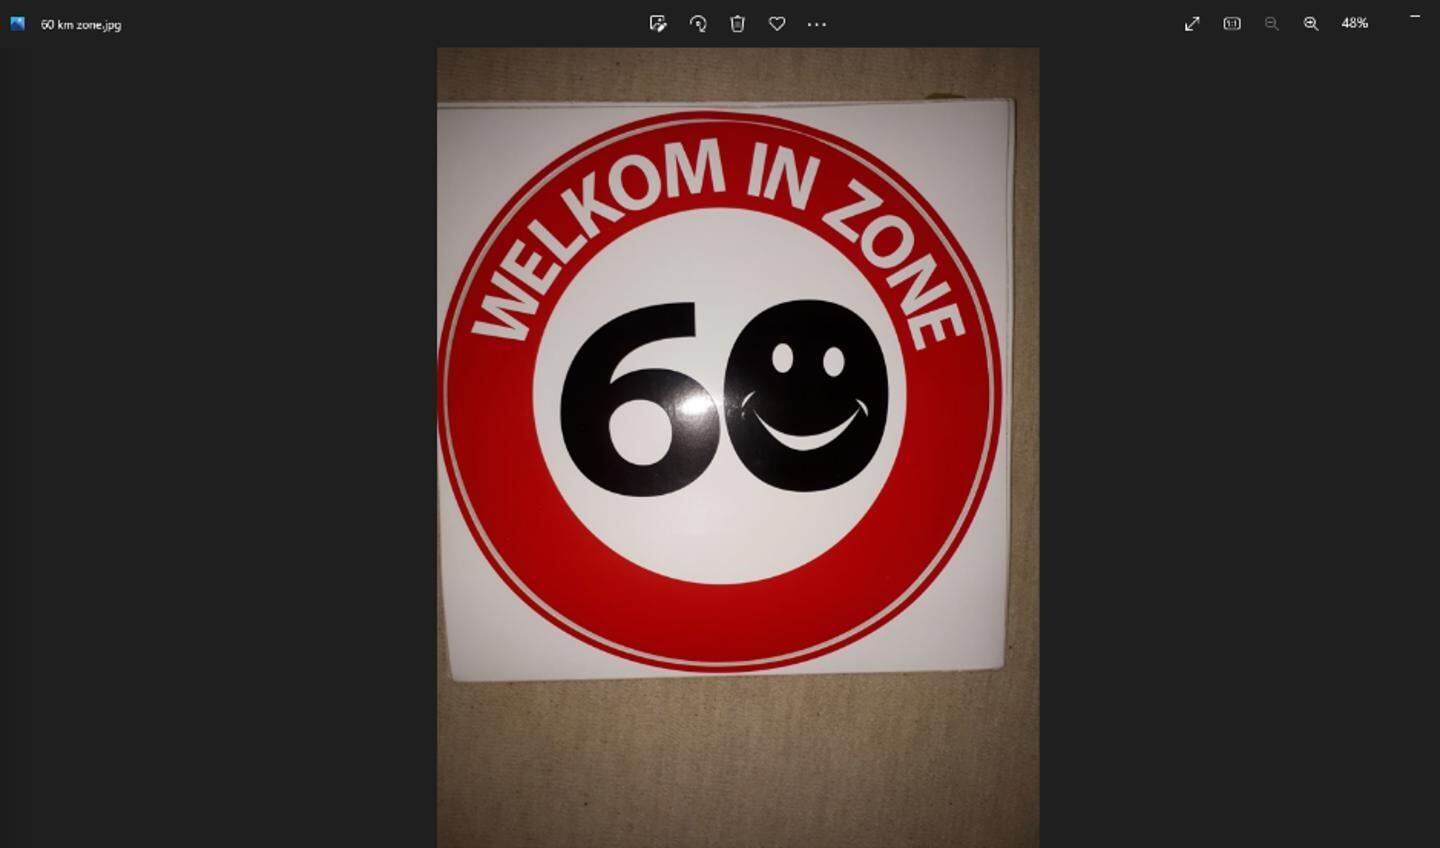 Sticker 60 km Wouw